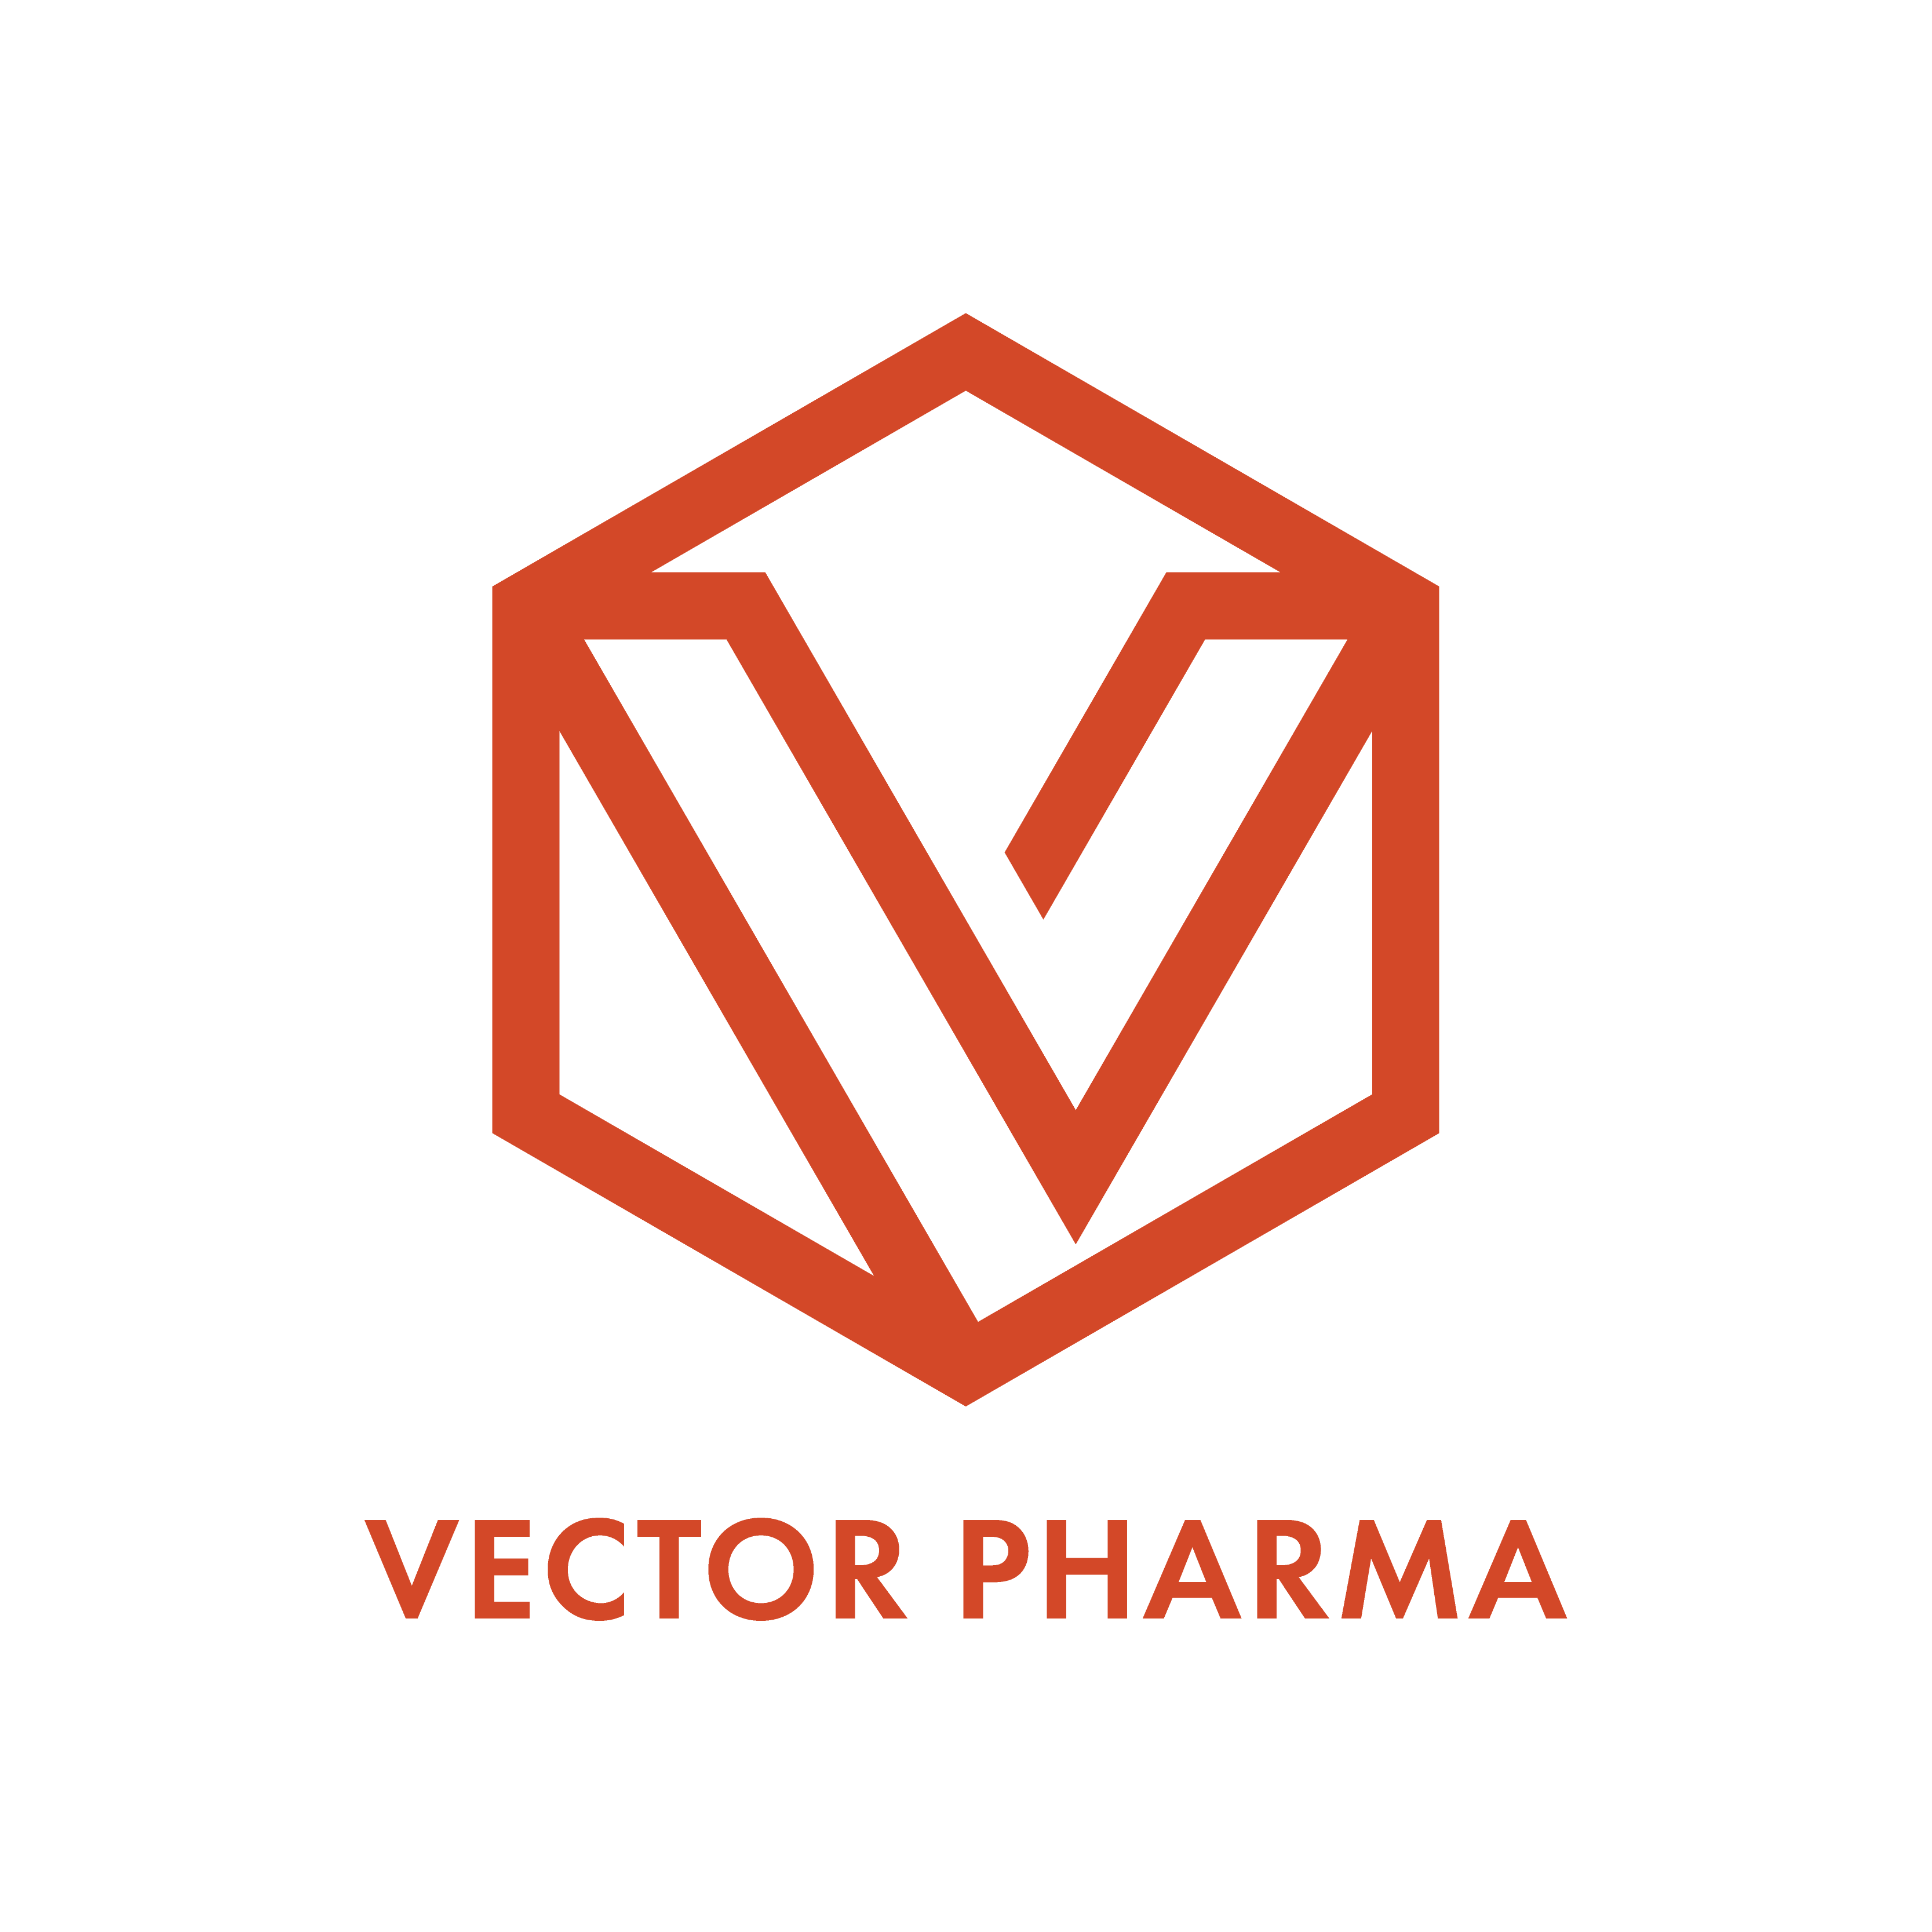 VP_Logo-Orange.png